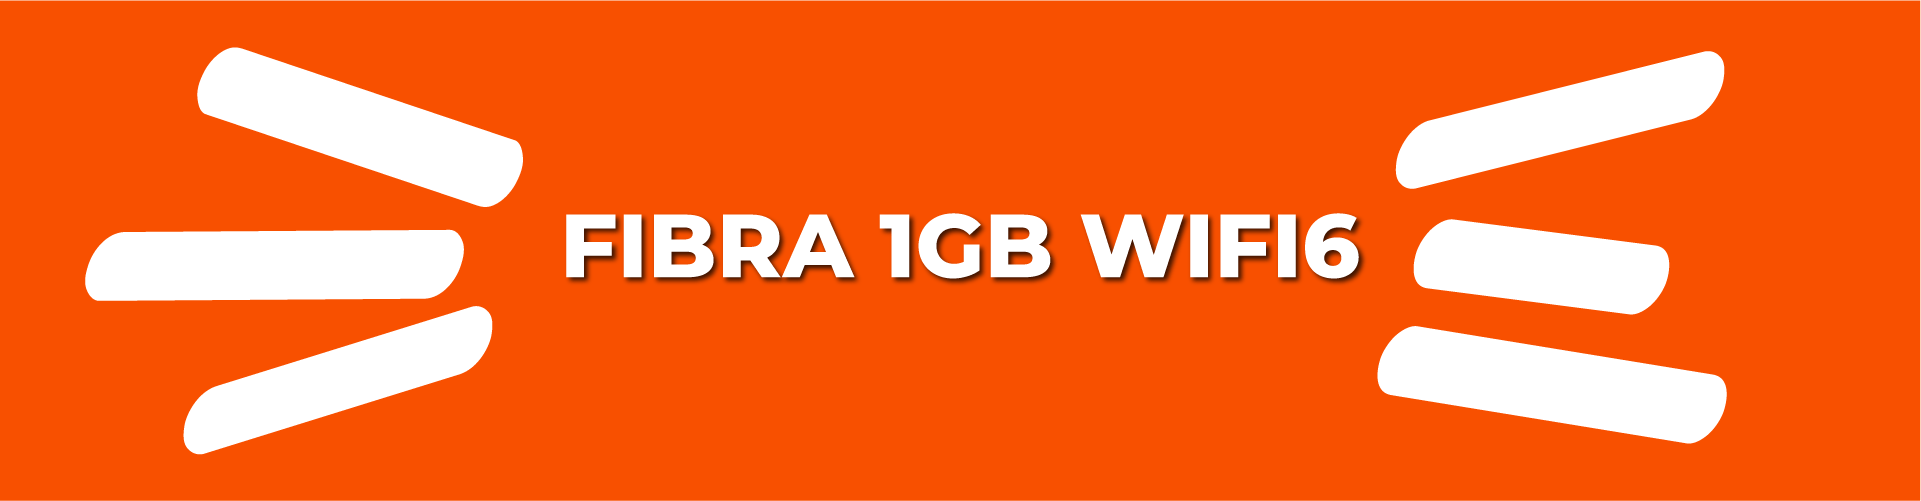 Fibra 1GB WIFI6